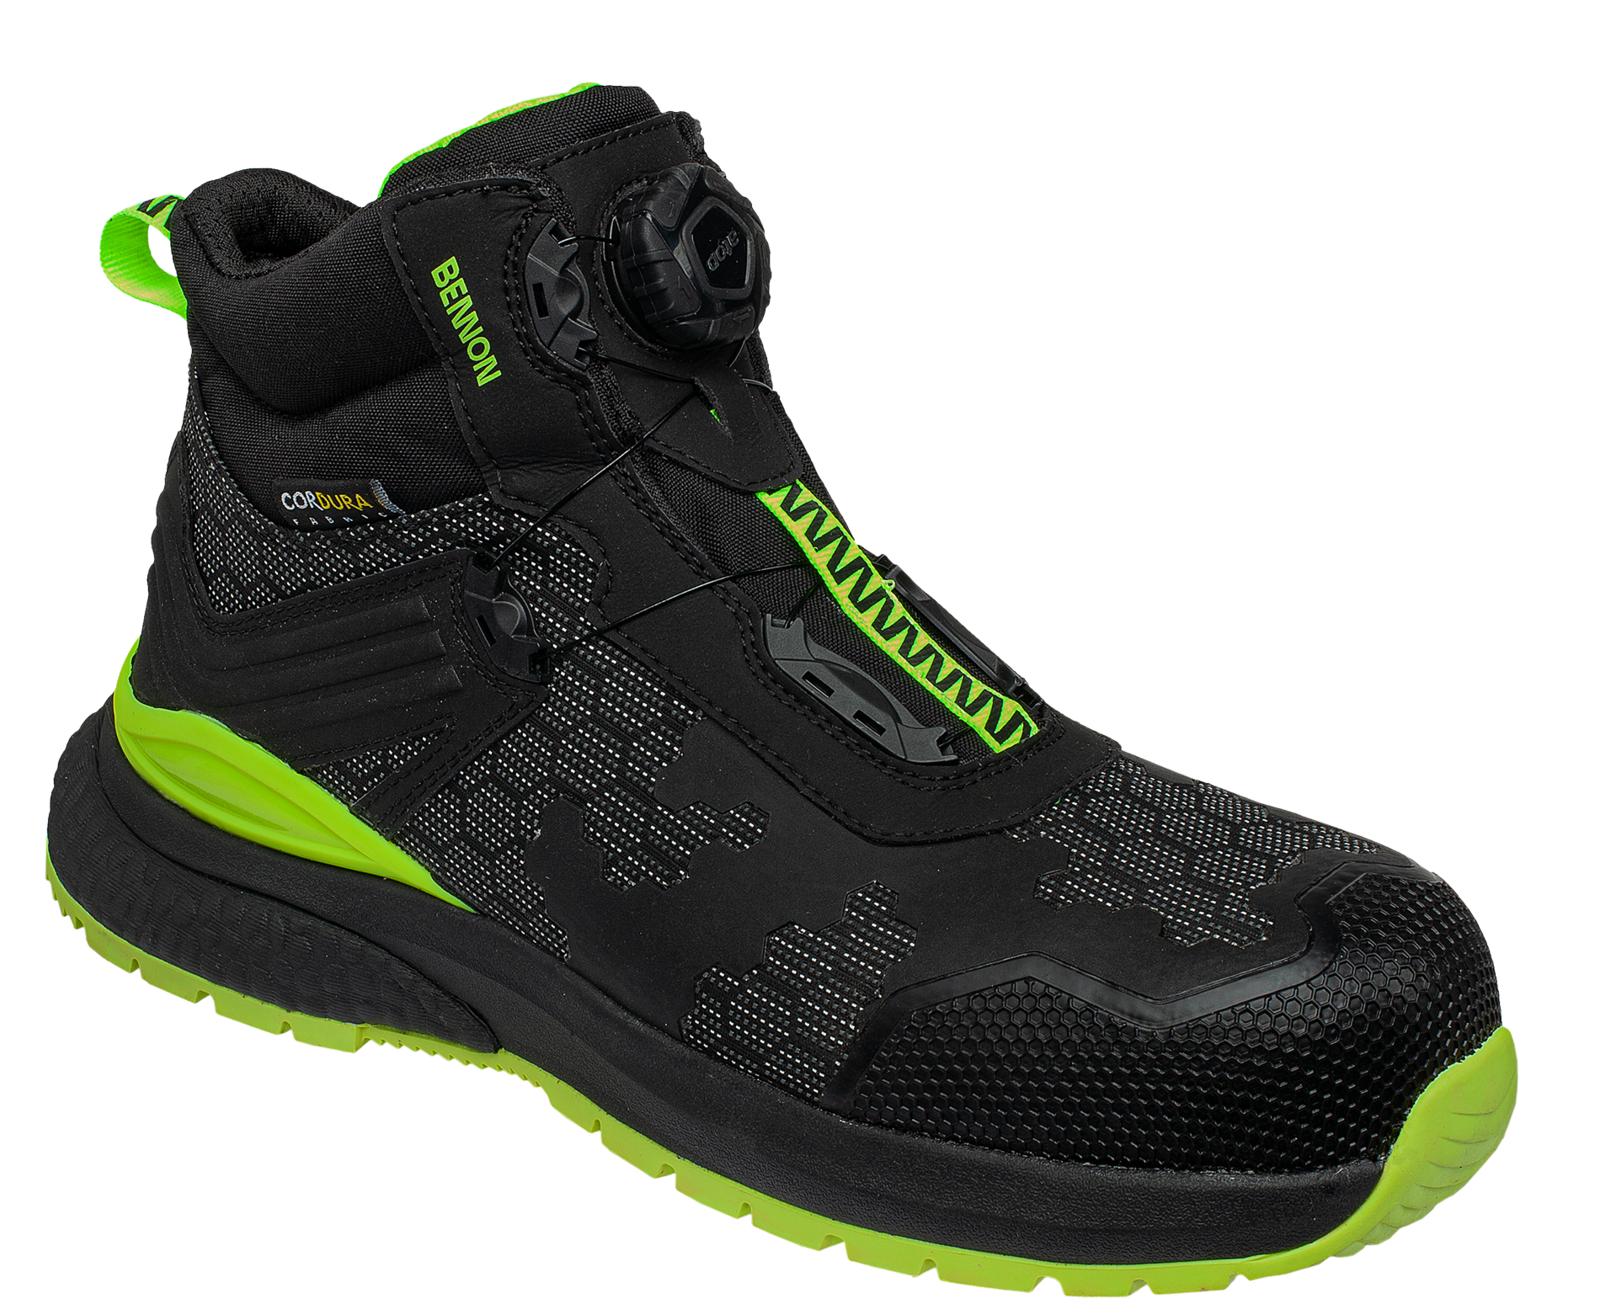 Bezpečnostná obuv Bennon Predator S3 ESD High - veľkosť: 38, farba: čierna/zelená